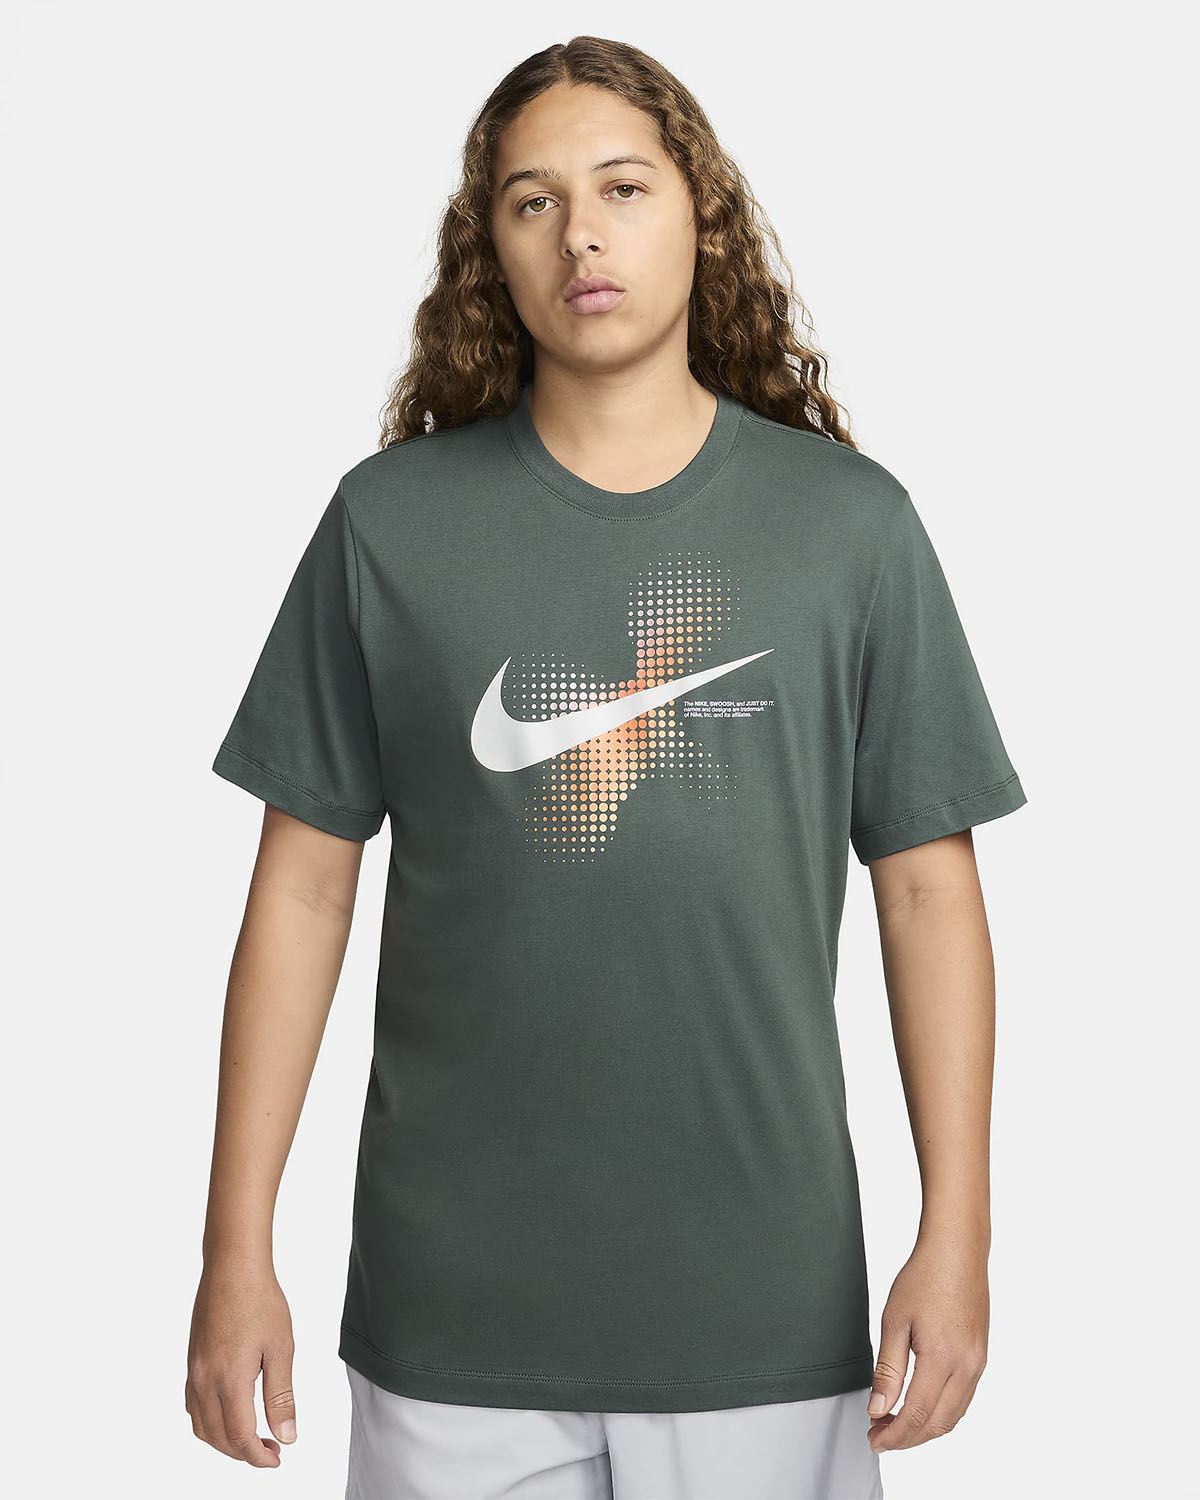 Nike Sportswear T Shirt Vintage Green 1